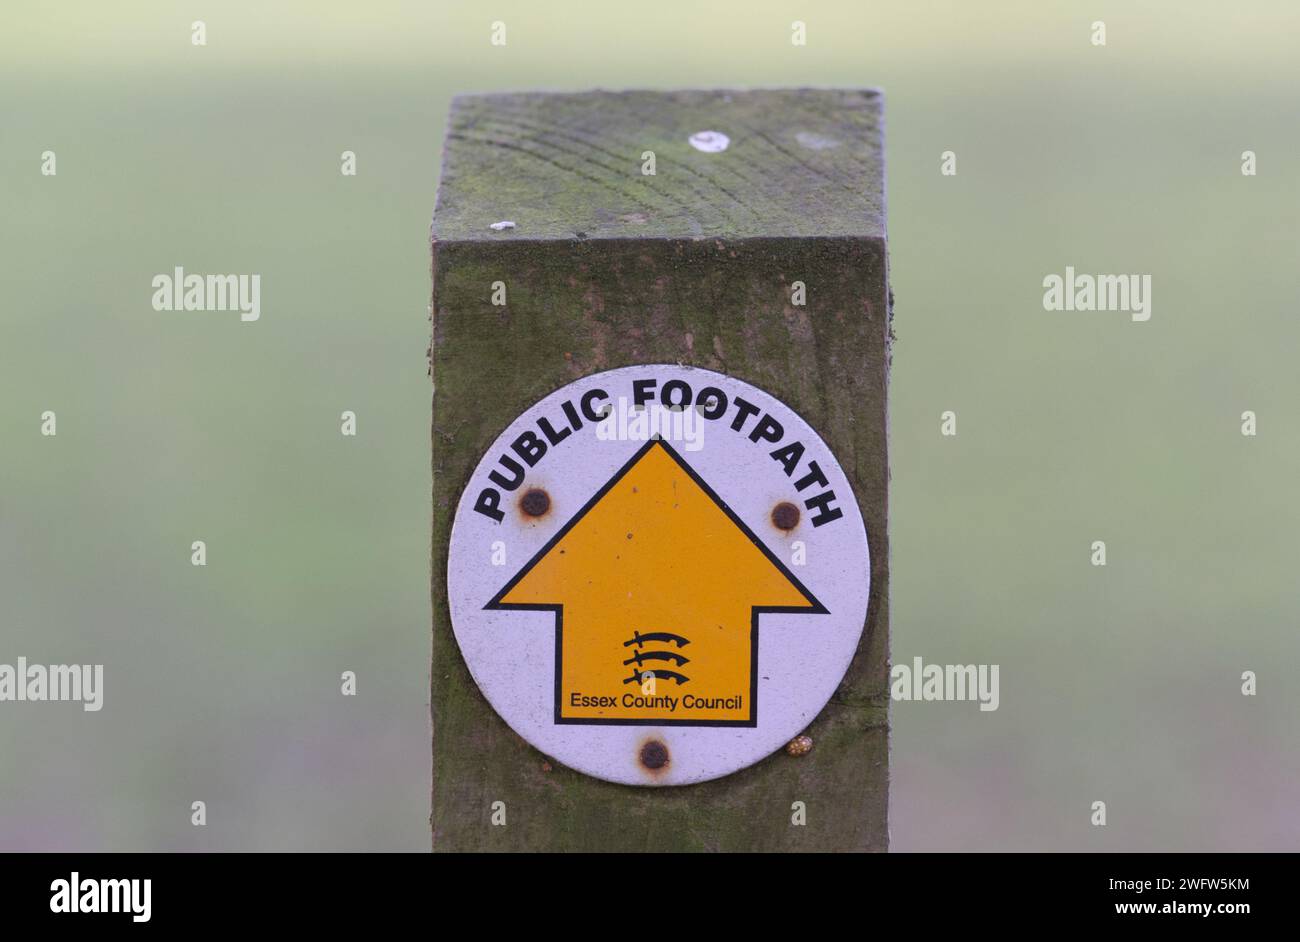 Holzpfosten mit kreisförmigem Schild, das die Richtung eines öffentlichen Fußwegs anzeigt, geradeaus, markiert durch einen Pfeil nach oben Stockfoto